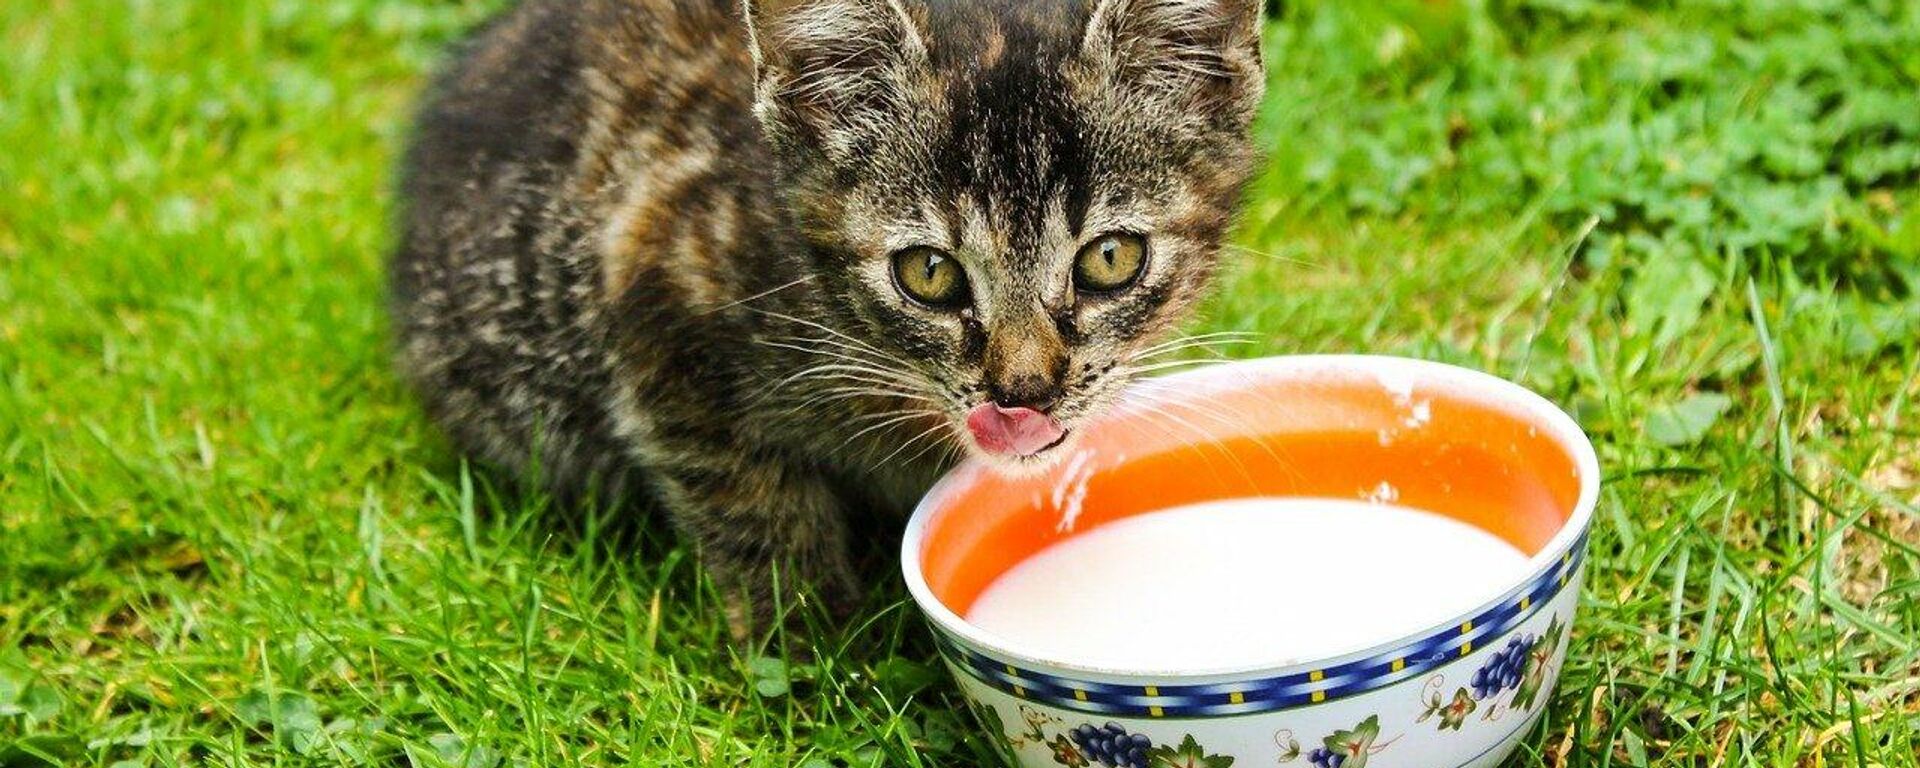 Se le puede dar leche a los gatos